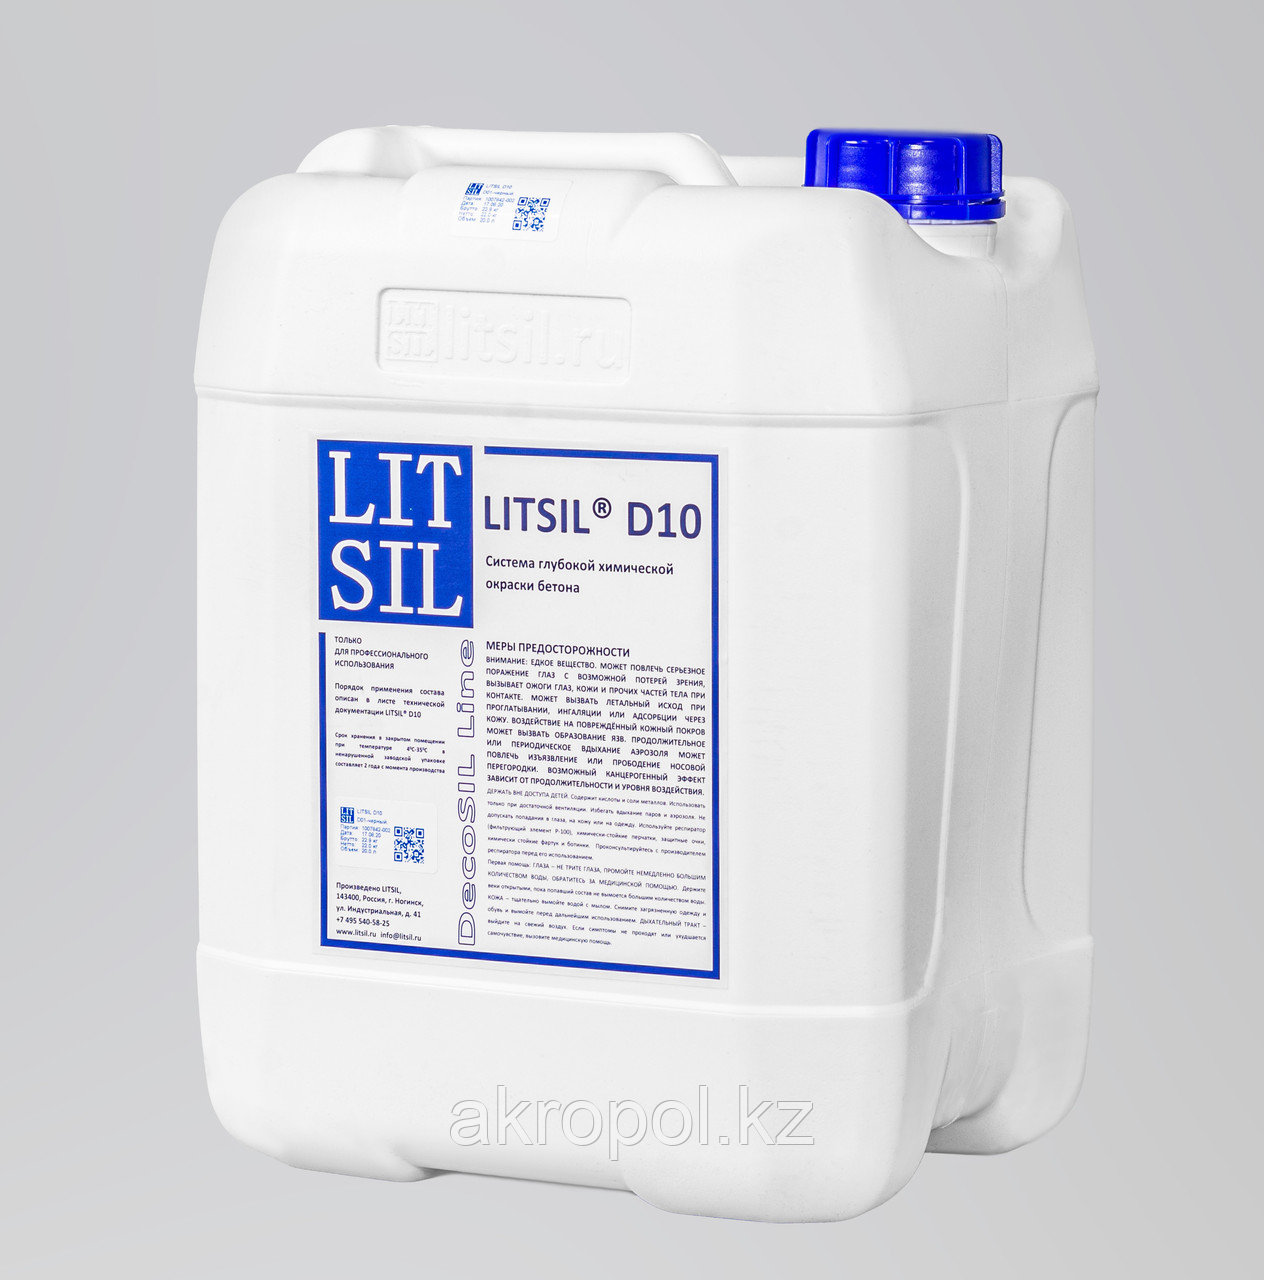 Система для глубокой химической окраски бетона Litsil D10